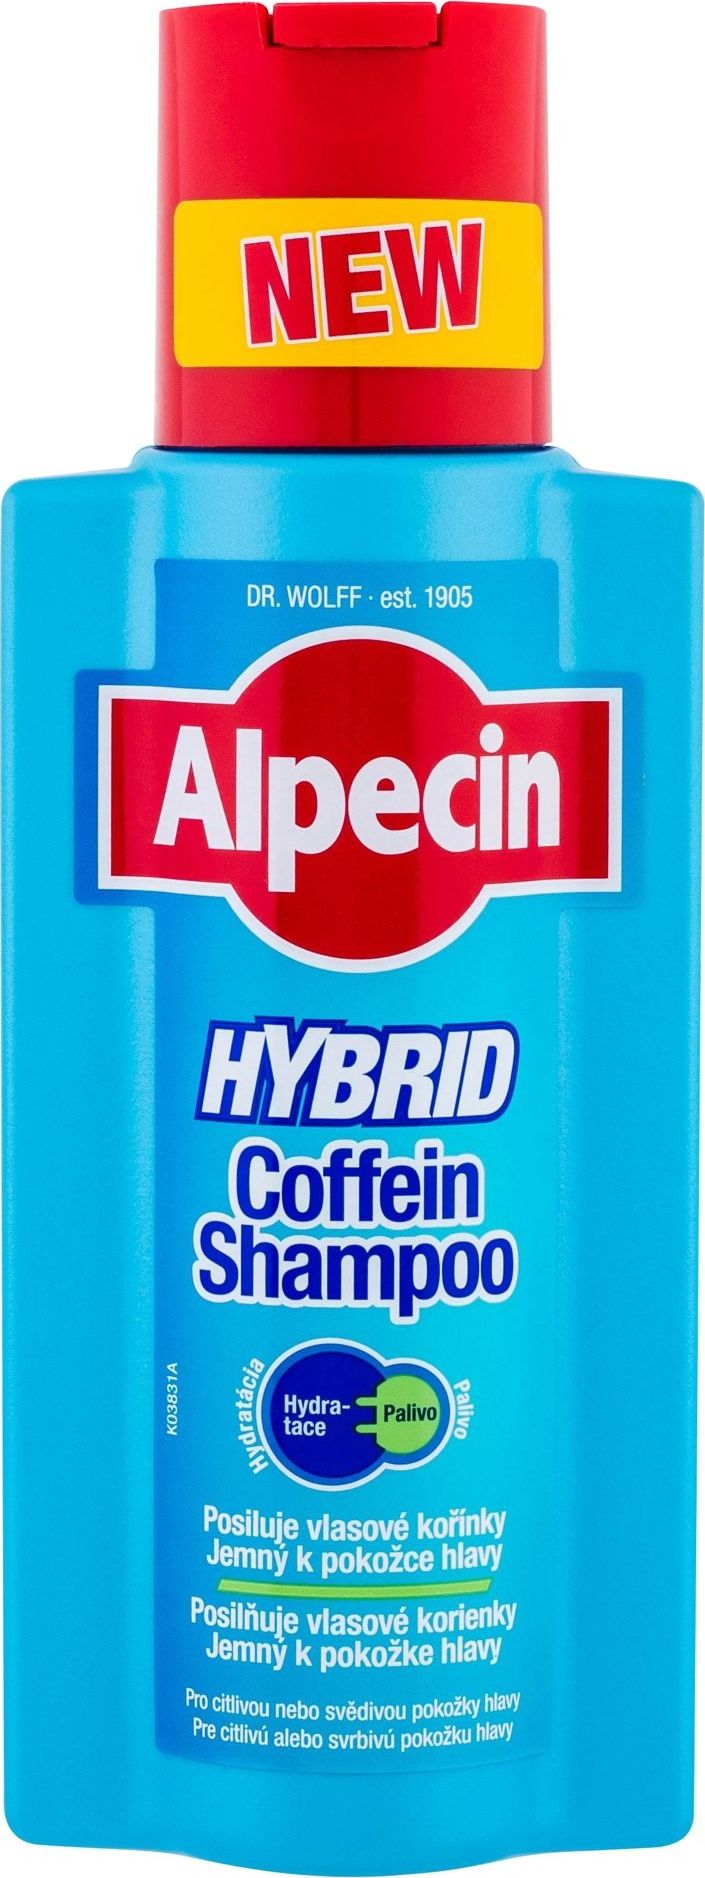 Alpecin Hybrid Coffein Shampoo Szampon do włosów, 250ml